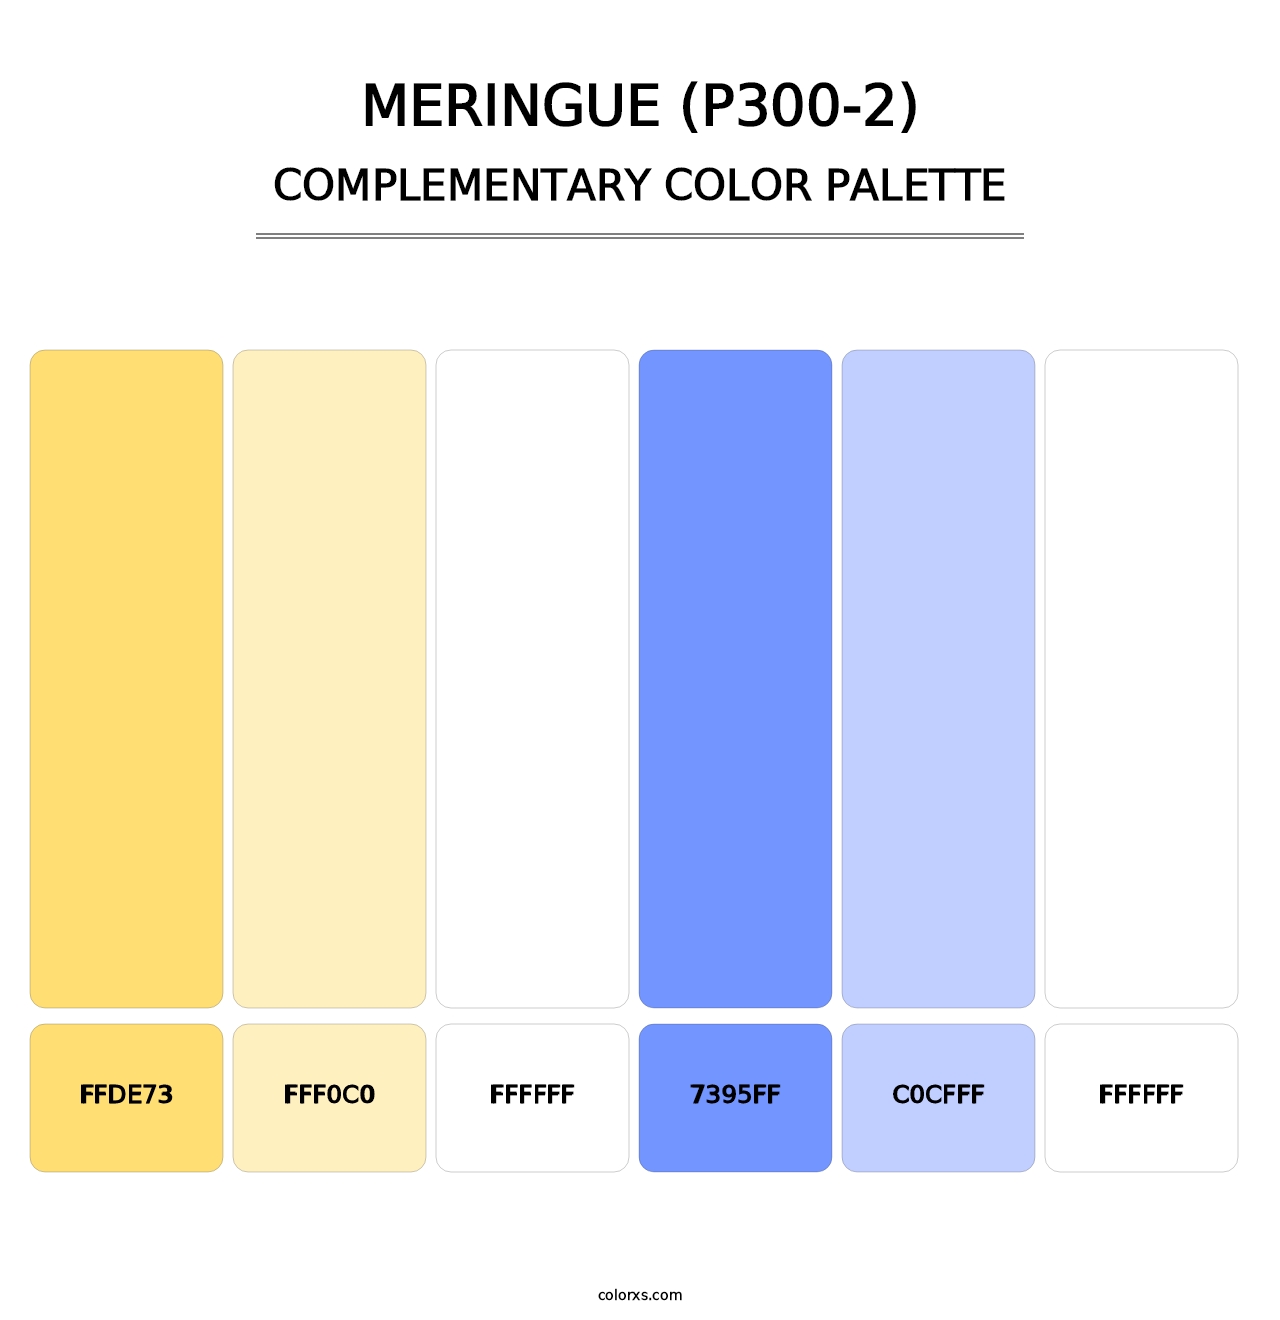 Meringue (P300-2) - Complementary Color Palette